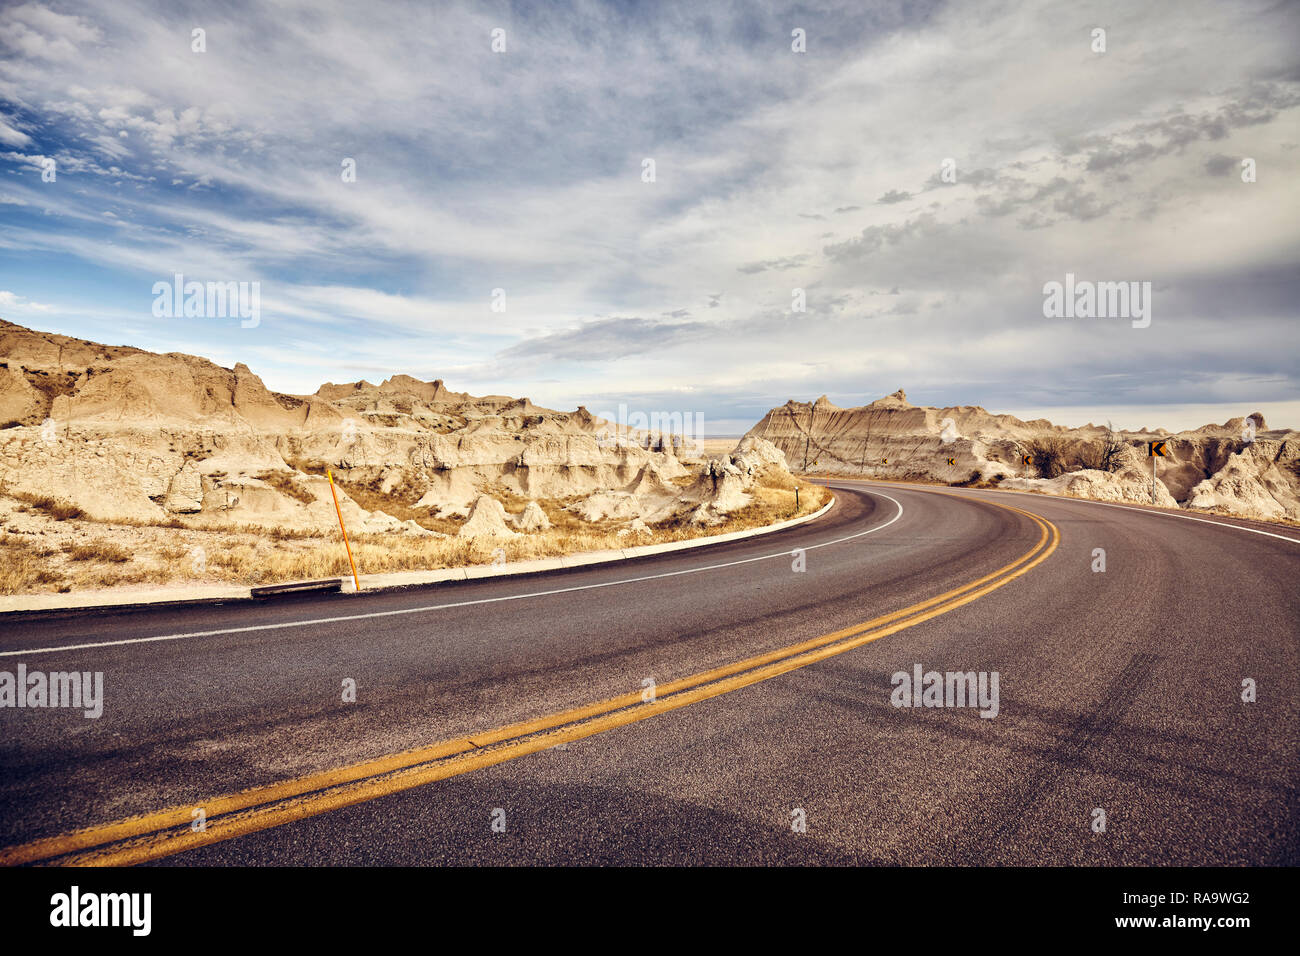 Retro getonten Bild einer malerischen Straße in Badlands National Park, Travel Concept, South Dakota, USA. Stockfoto